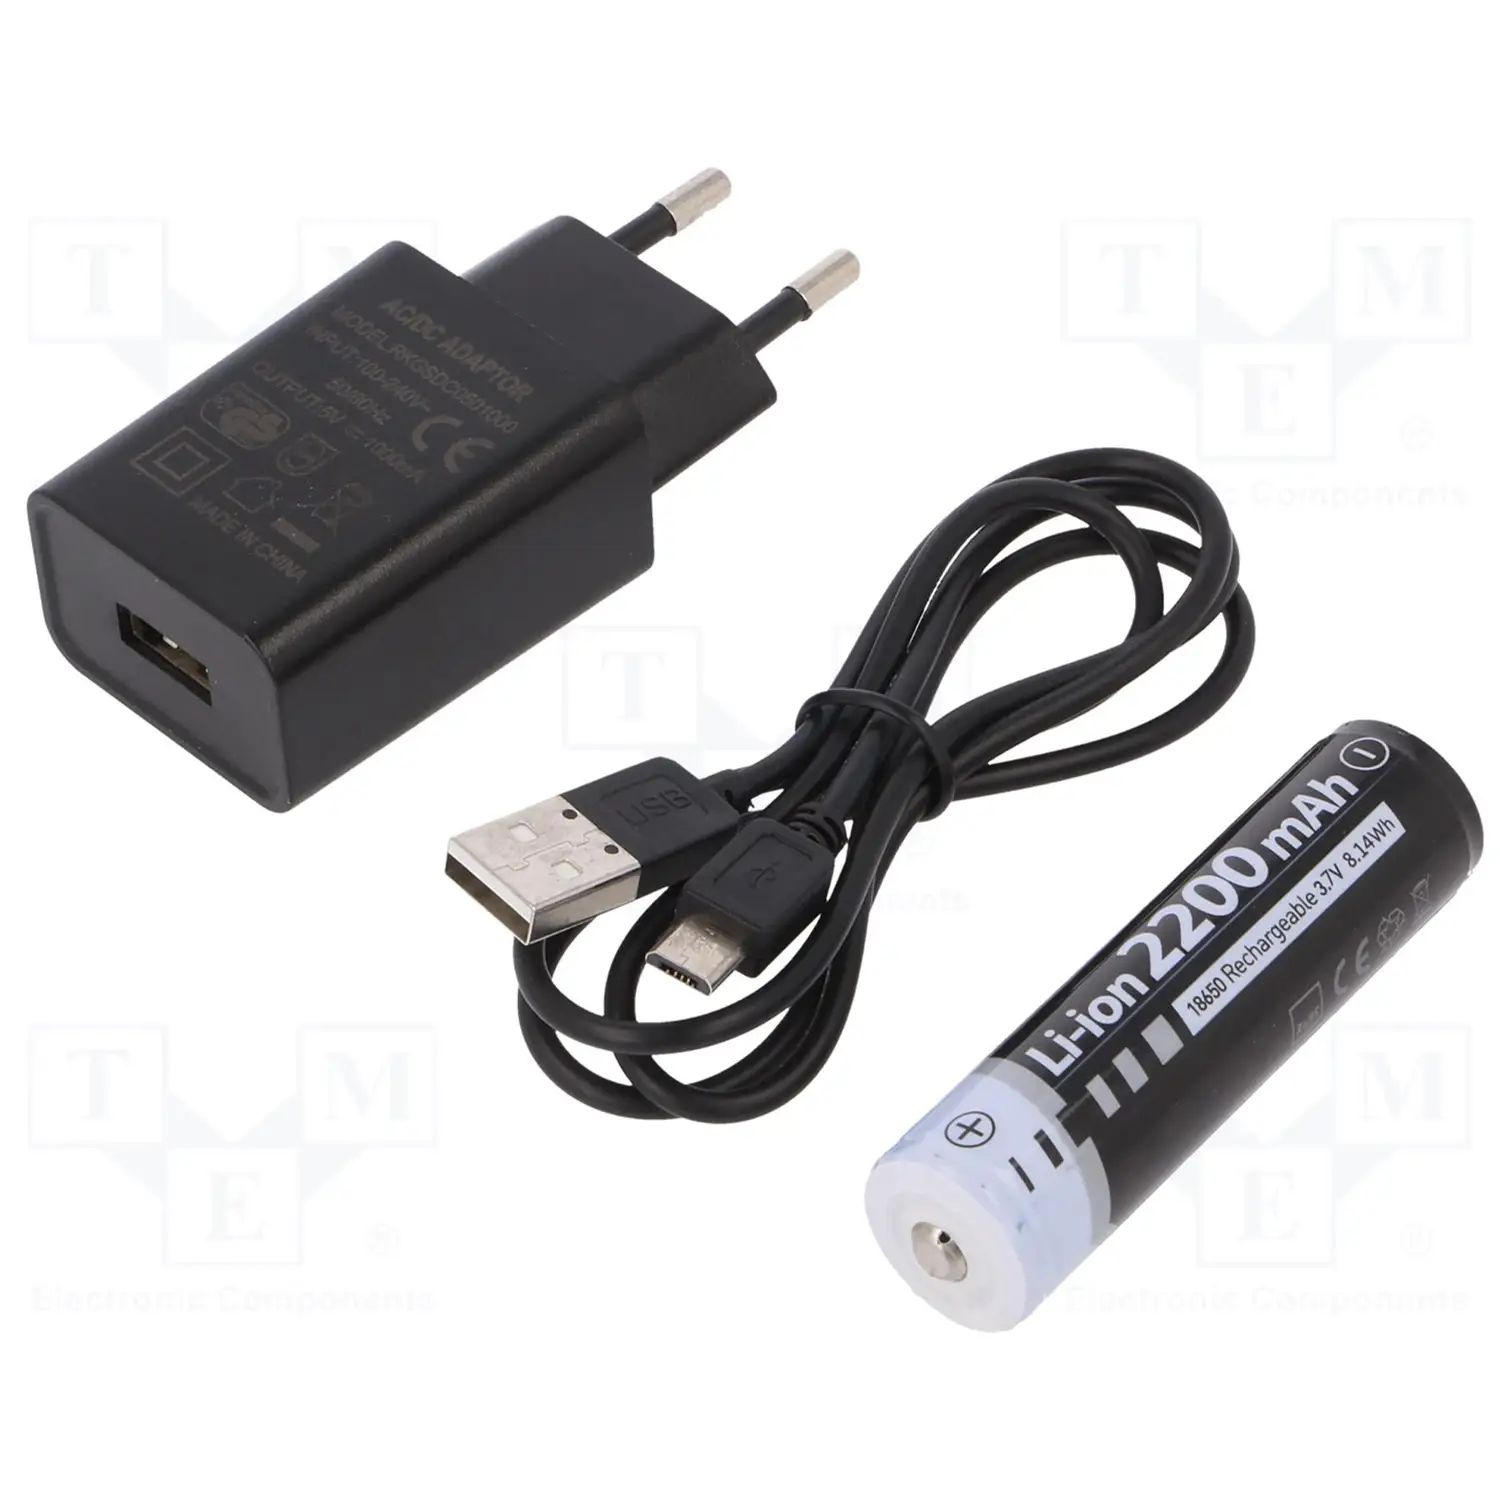 Фонарь профессиональный Mactronic Beemer 4, 350 Lm + UV 390 nm Ultraviolet Focus USB Recharg (PWL0021) - фото 8